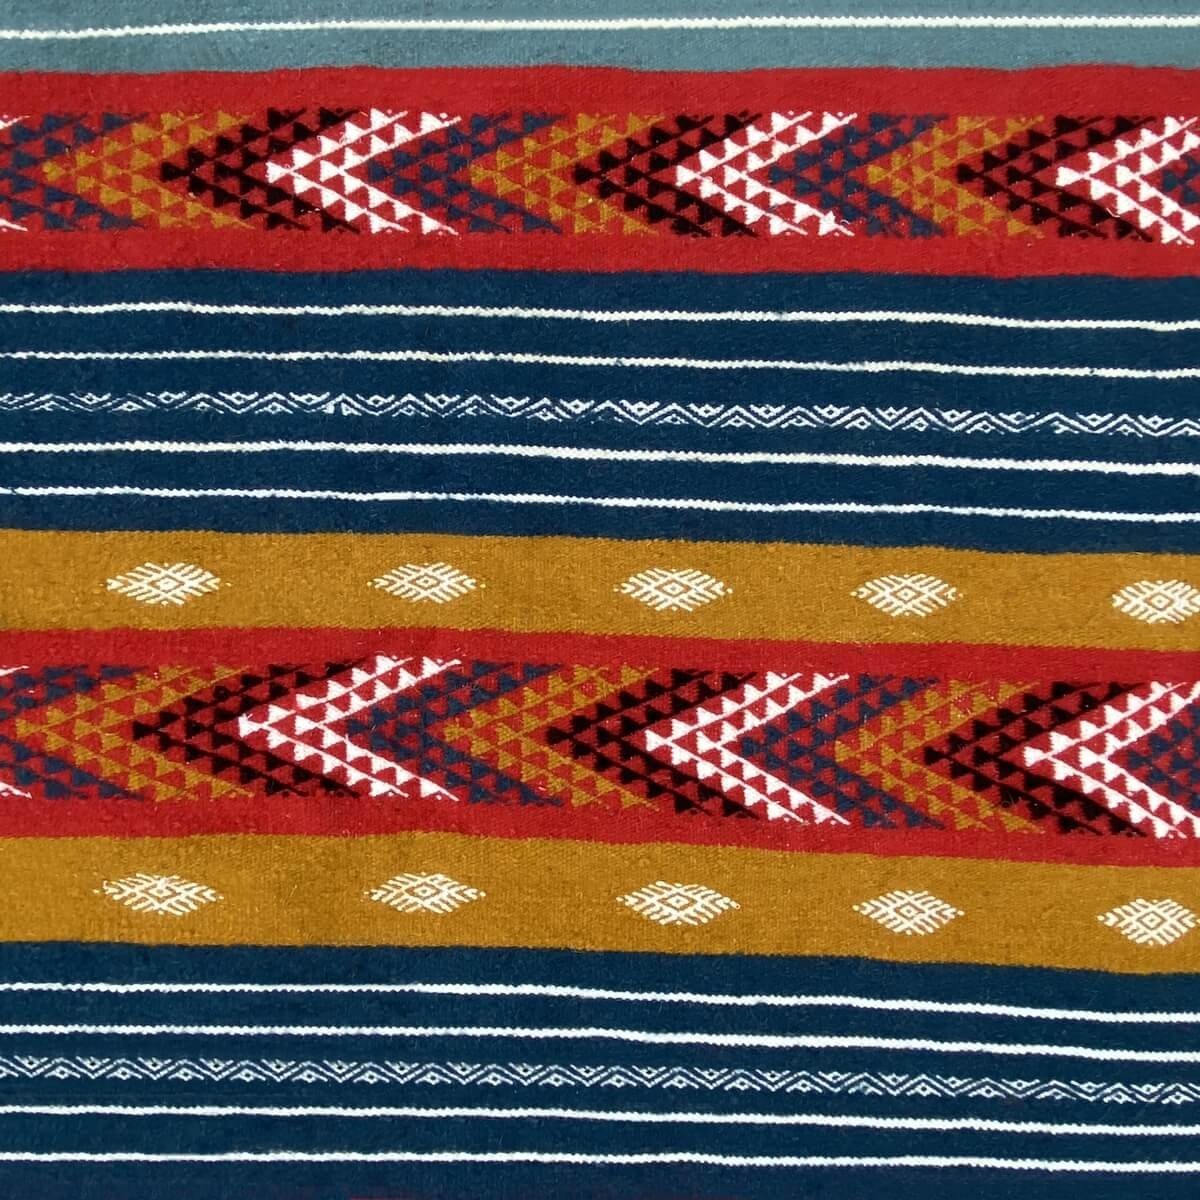 Tapete berbere Tapete Kilim Nelya 95x150 Multicor (Tecidos à mão, Lã) Tapete tunisiano kilim, estilo marroquino. Tapete retangul